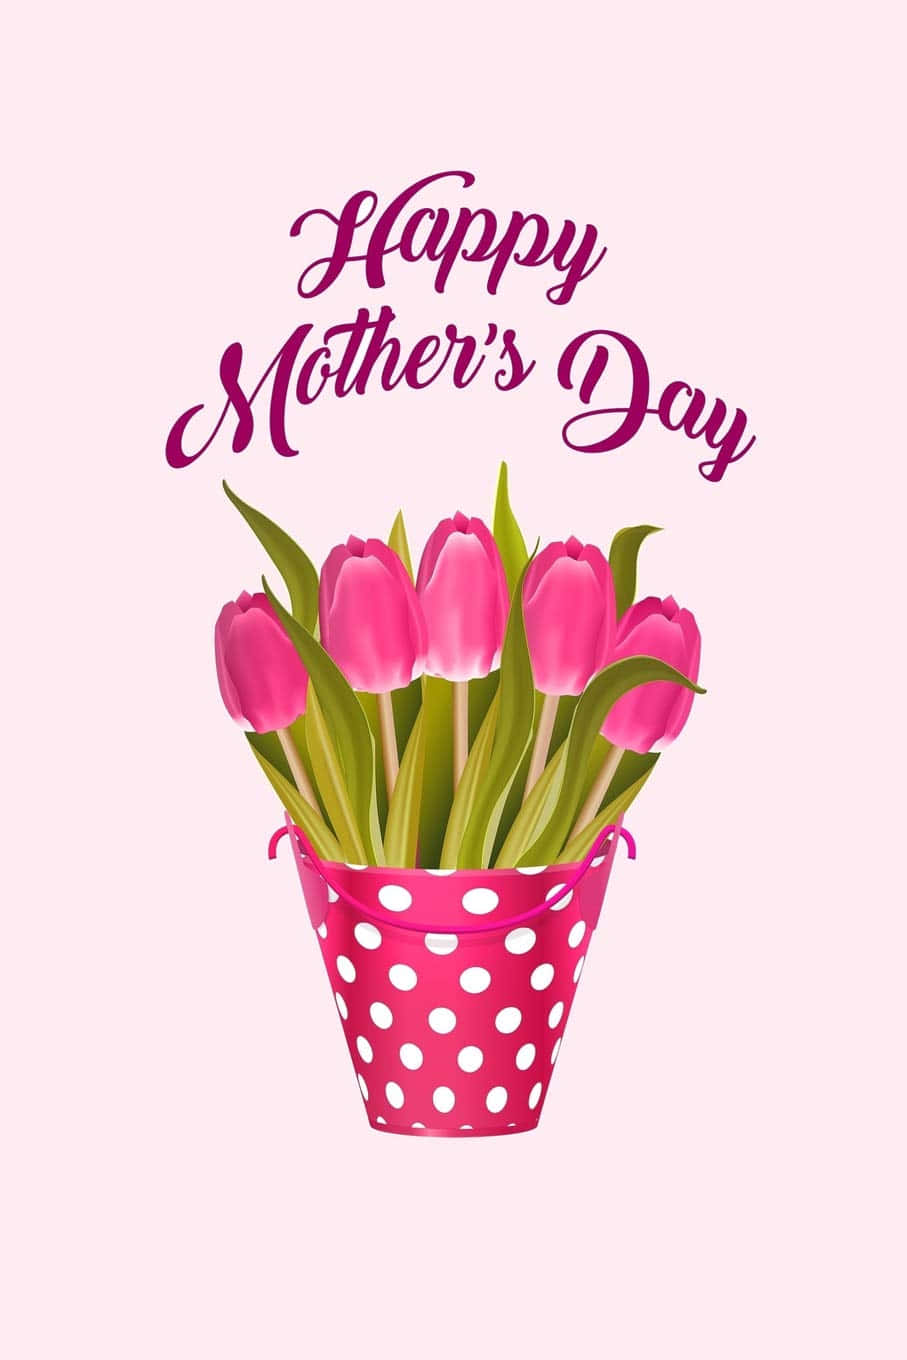 Agradeçae Reconheça O Amor De Todas As Mães Neste Dia Das Mães.